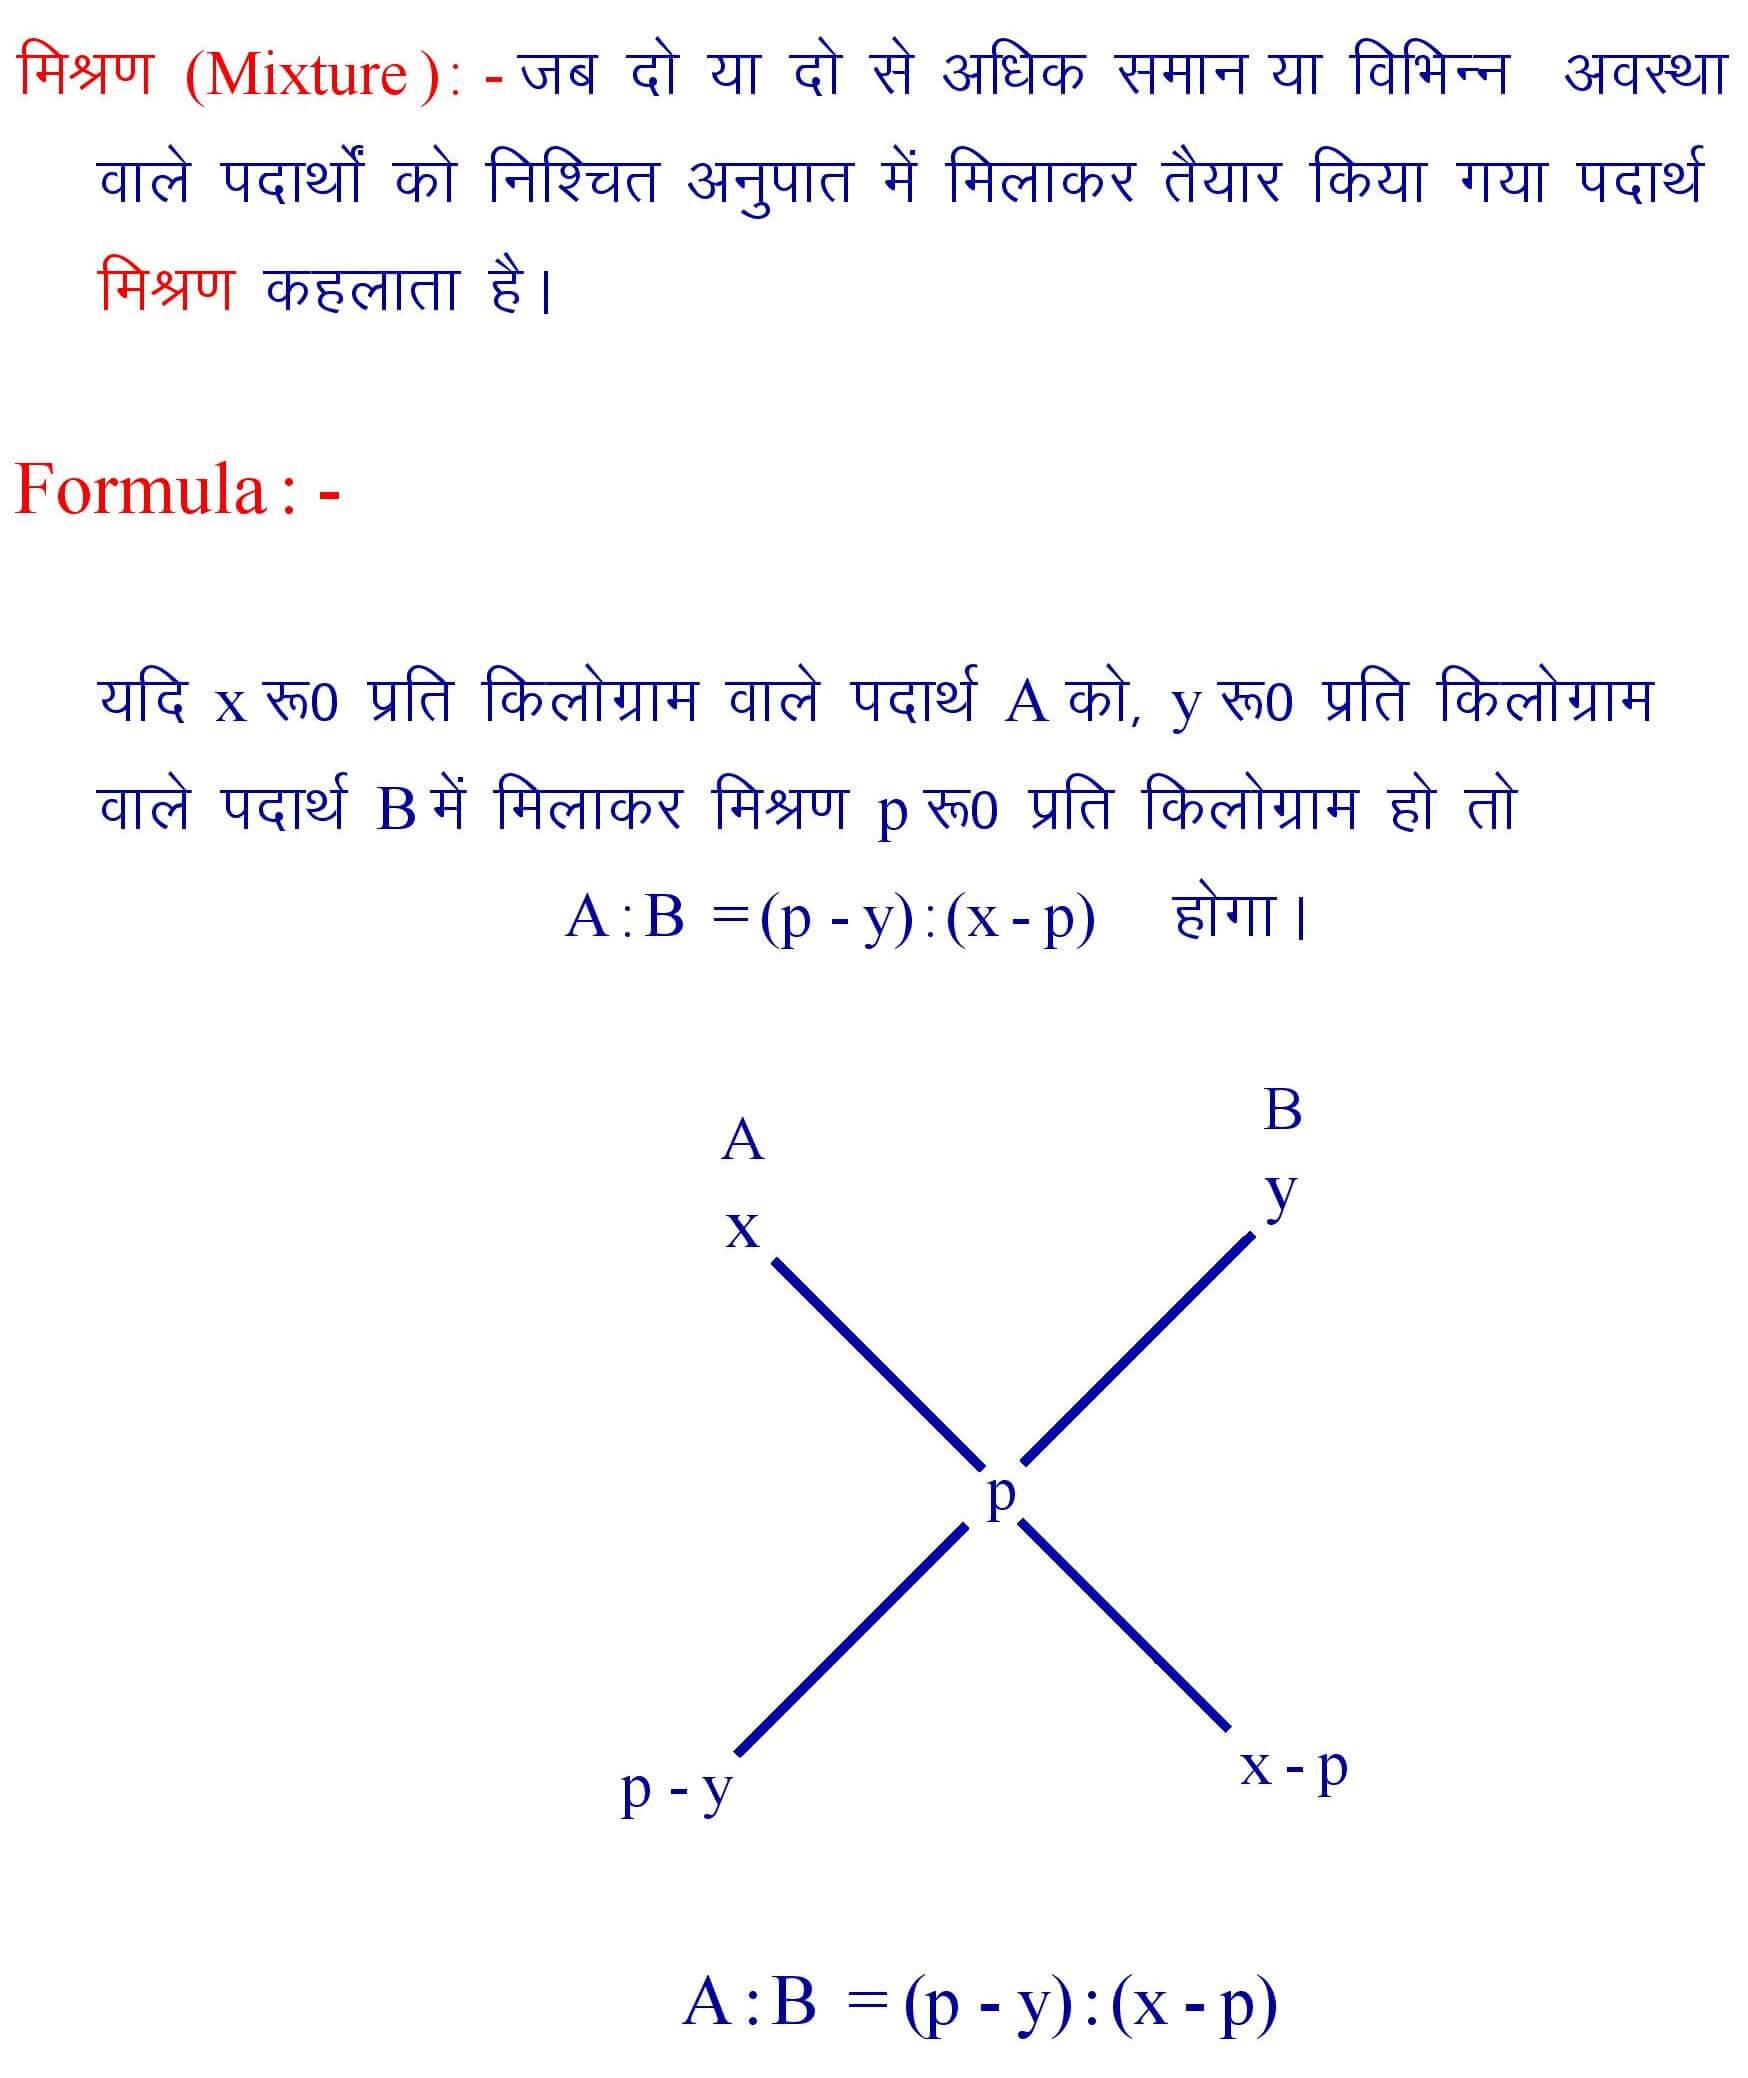 Mixture Formula in Hindi